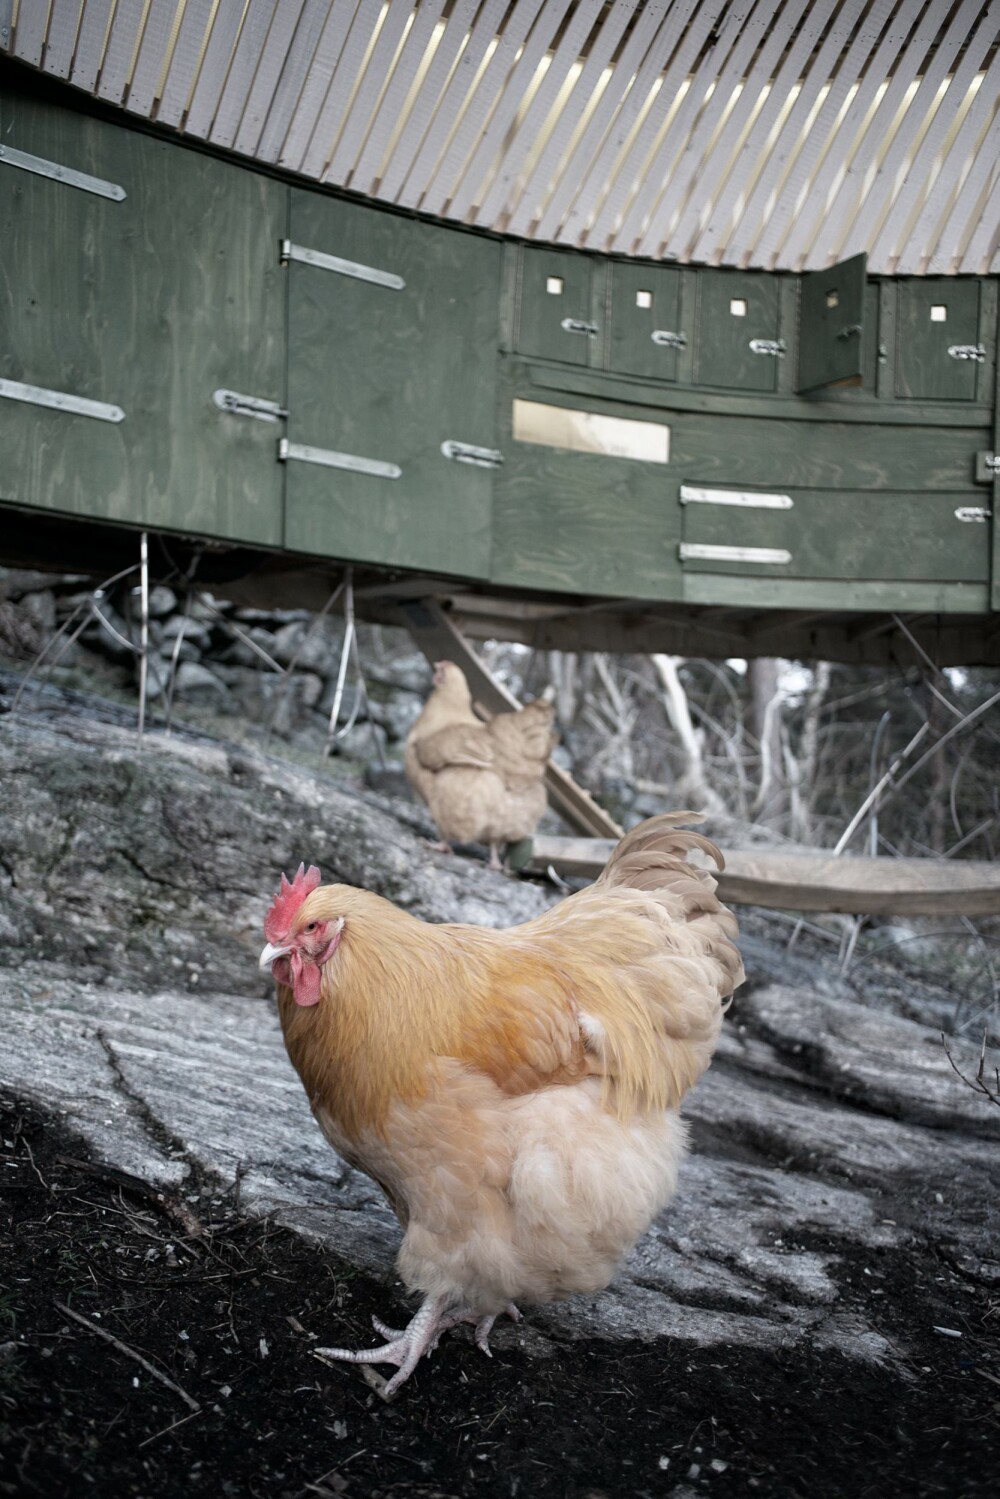 SVEVER PÅ BERGET: En stålkonstruksjon forankrer hønsehuset til fjellknausen. En rekke luker sørger for at man kan skuffe ut hønsemøkk og holde huset rent.